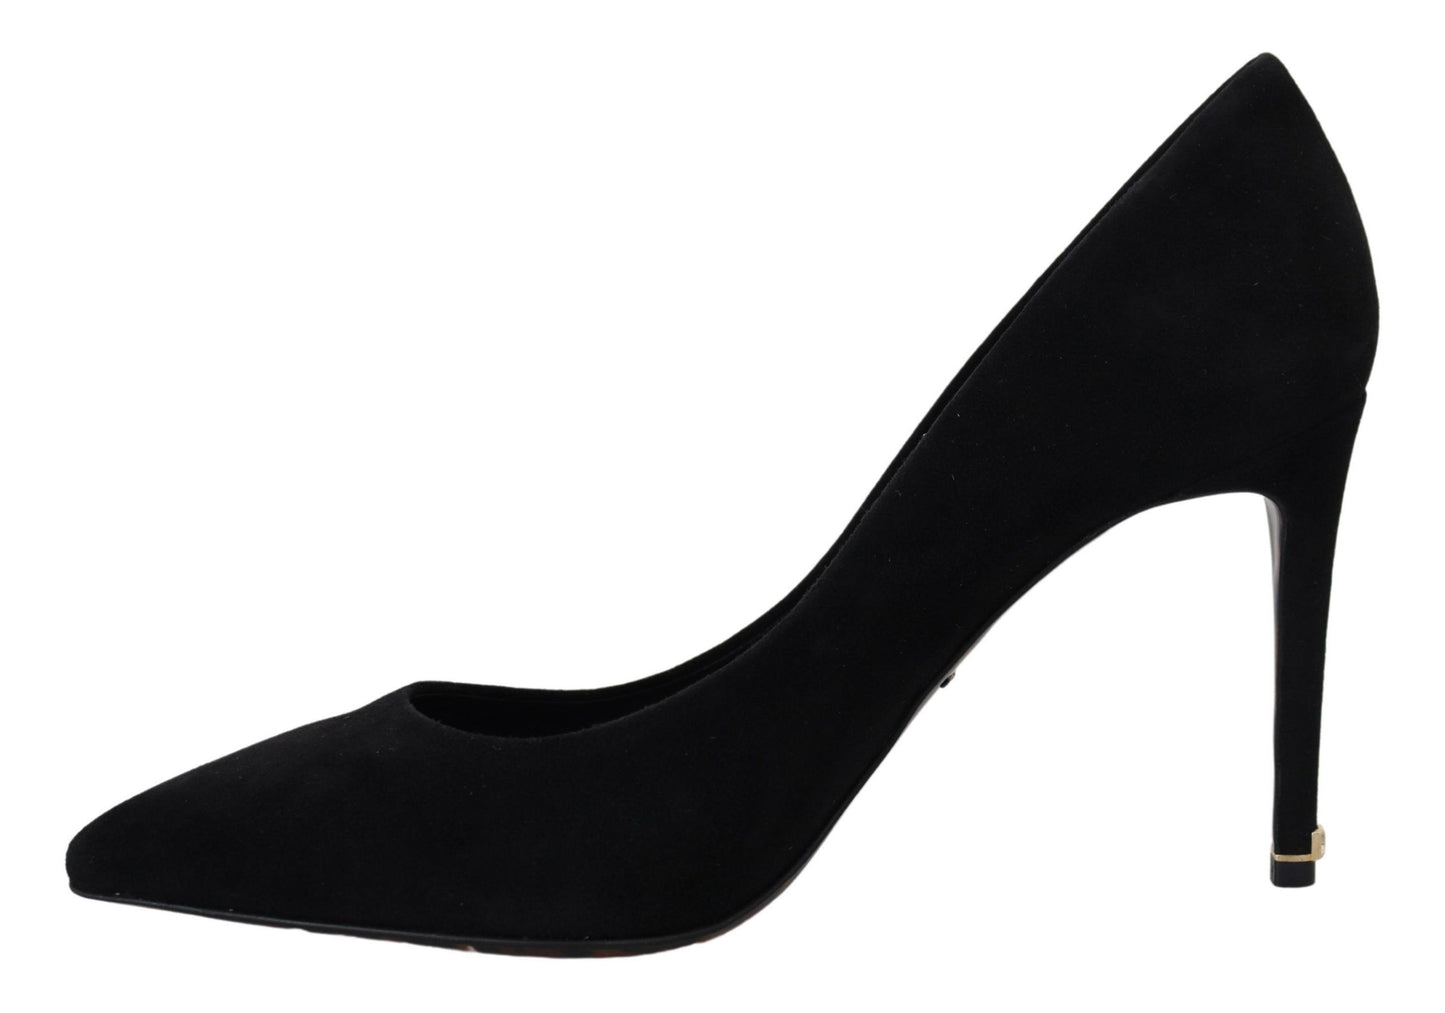 Elegant Black Suede Stiletto Heels Pumps